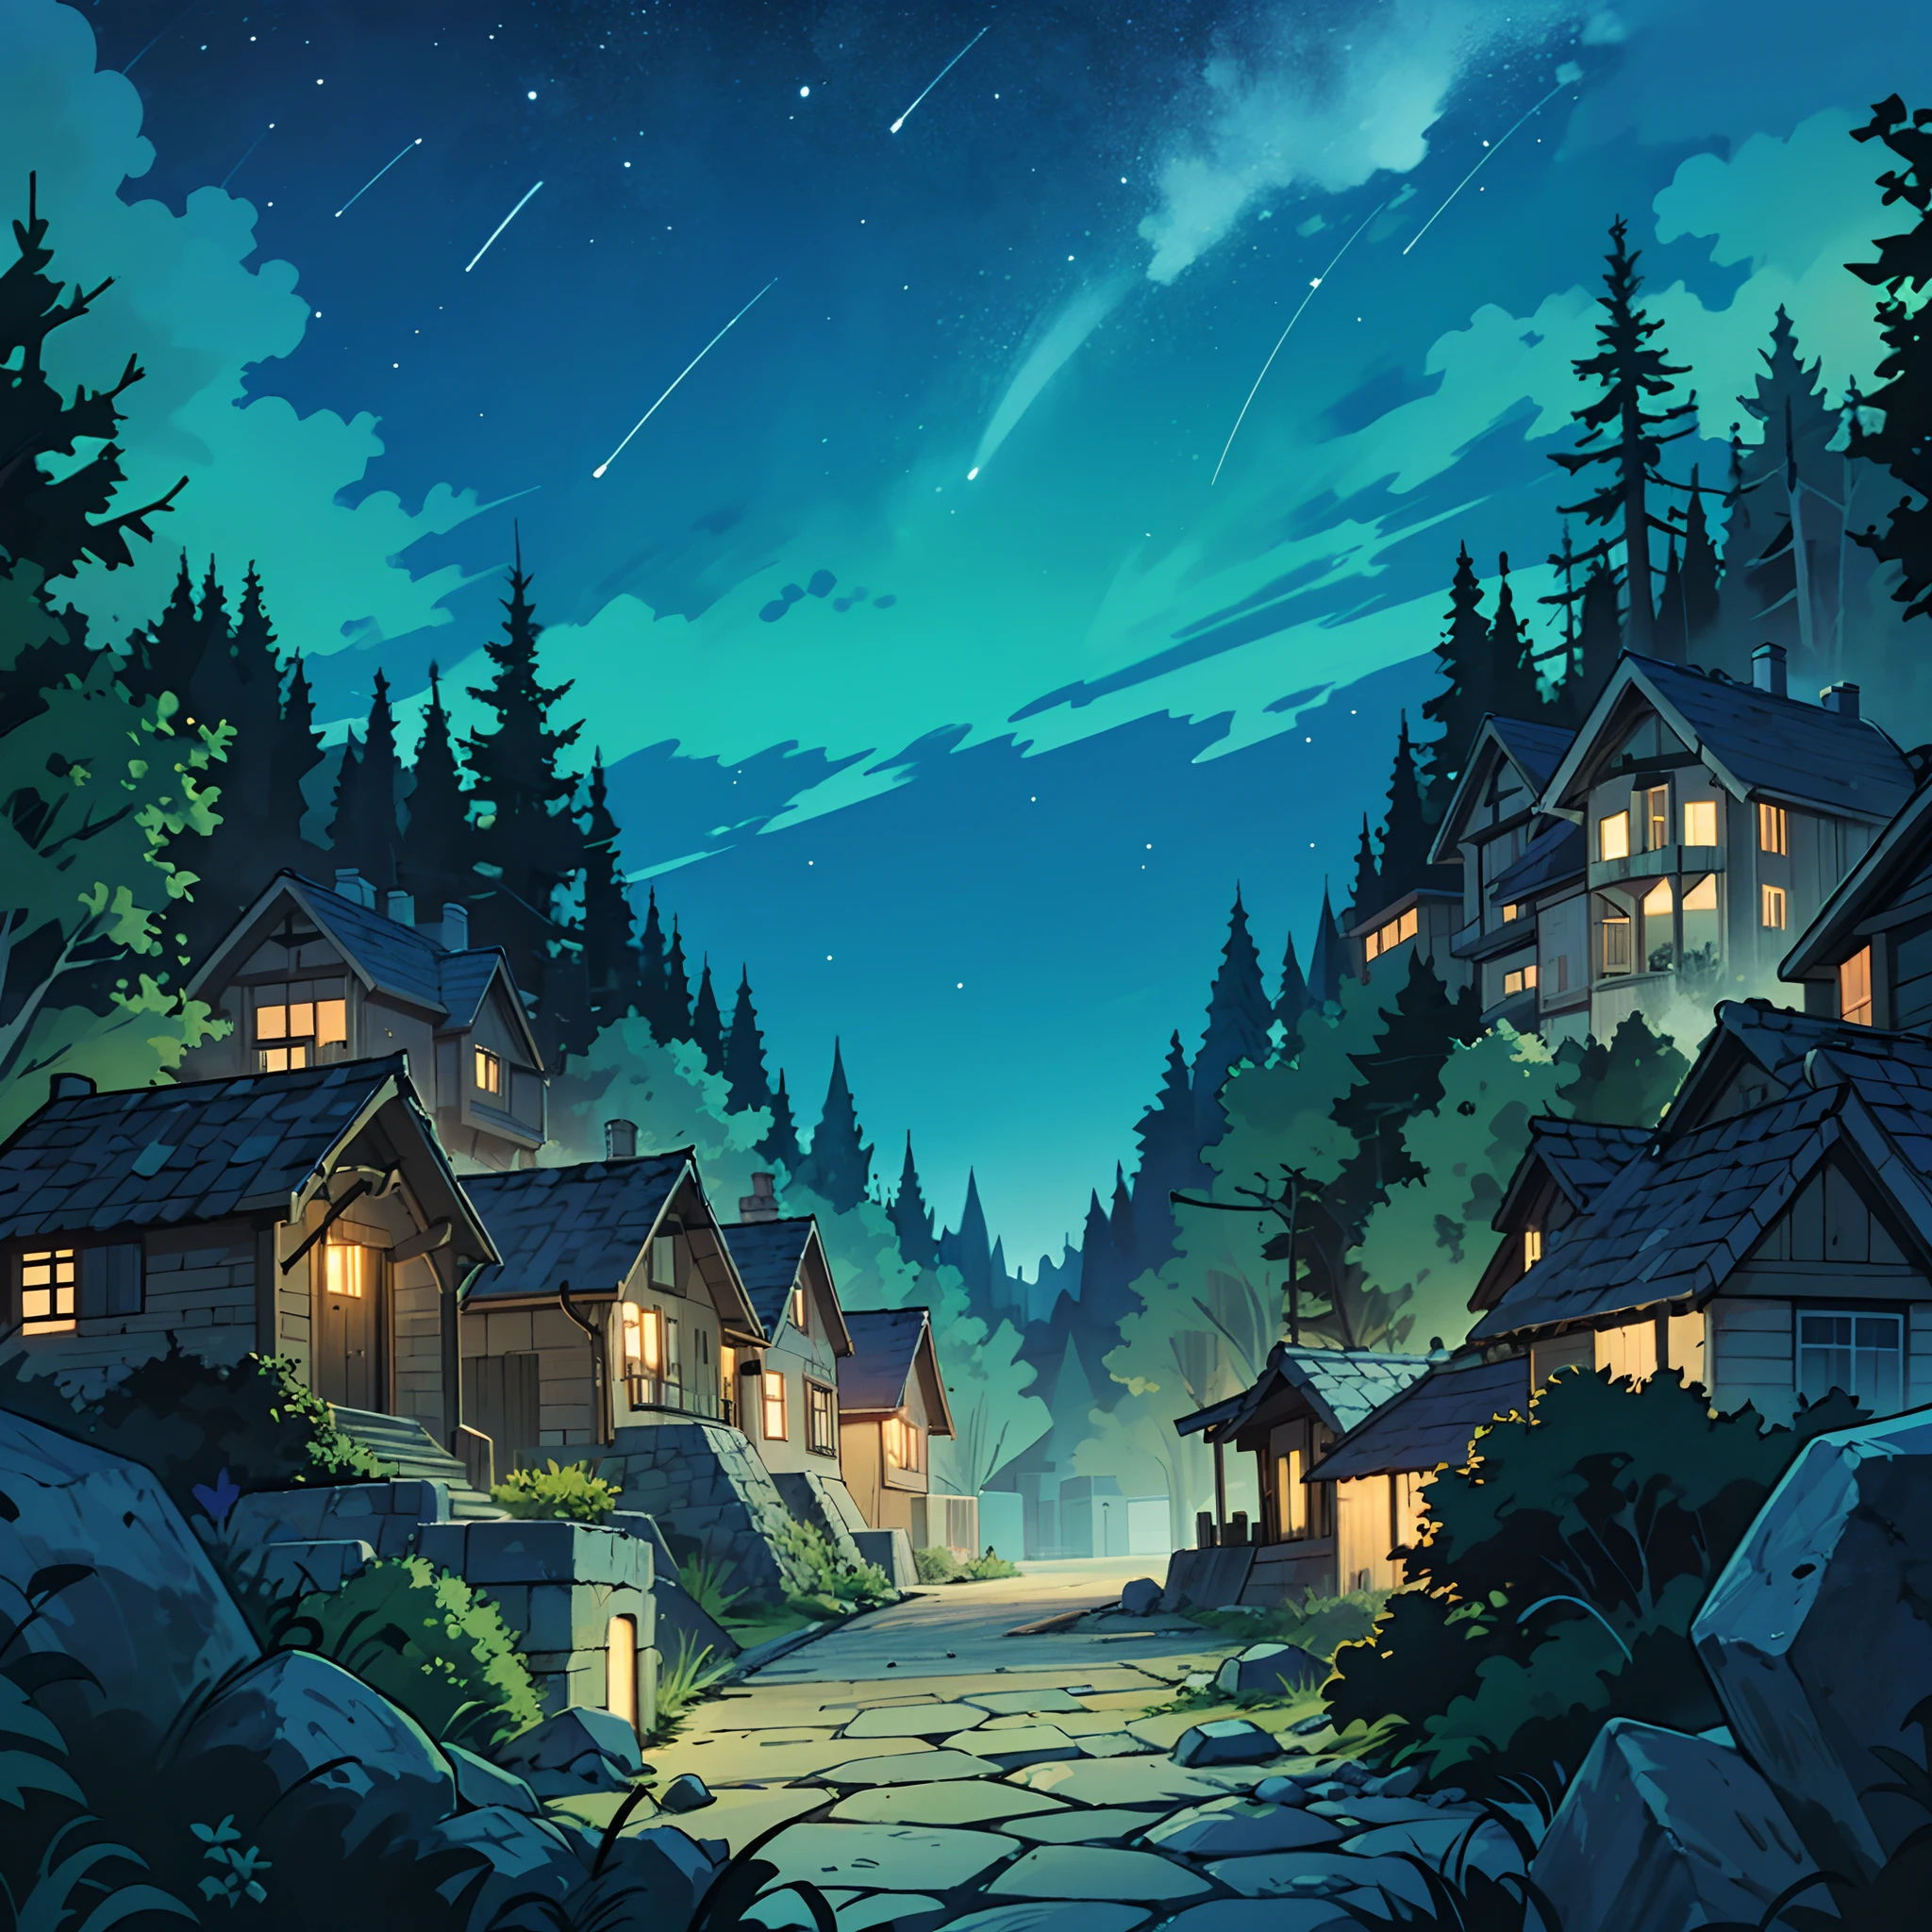 夏の夜の森のワイドショット, 鮮やかな緑の木々と明るい, 澄んだ夜空, 石の歩道が中央に設けられ、まるで村のようにアパート同士がつながっている. アニメの背景